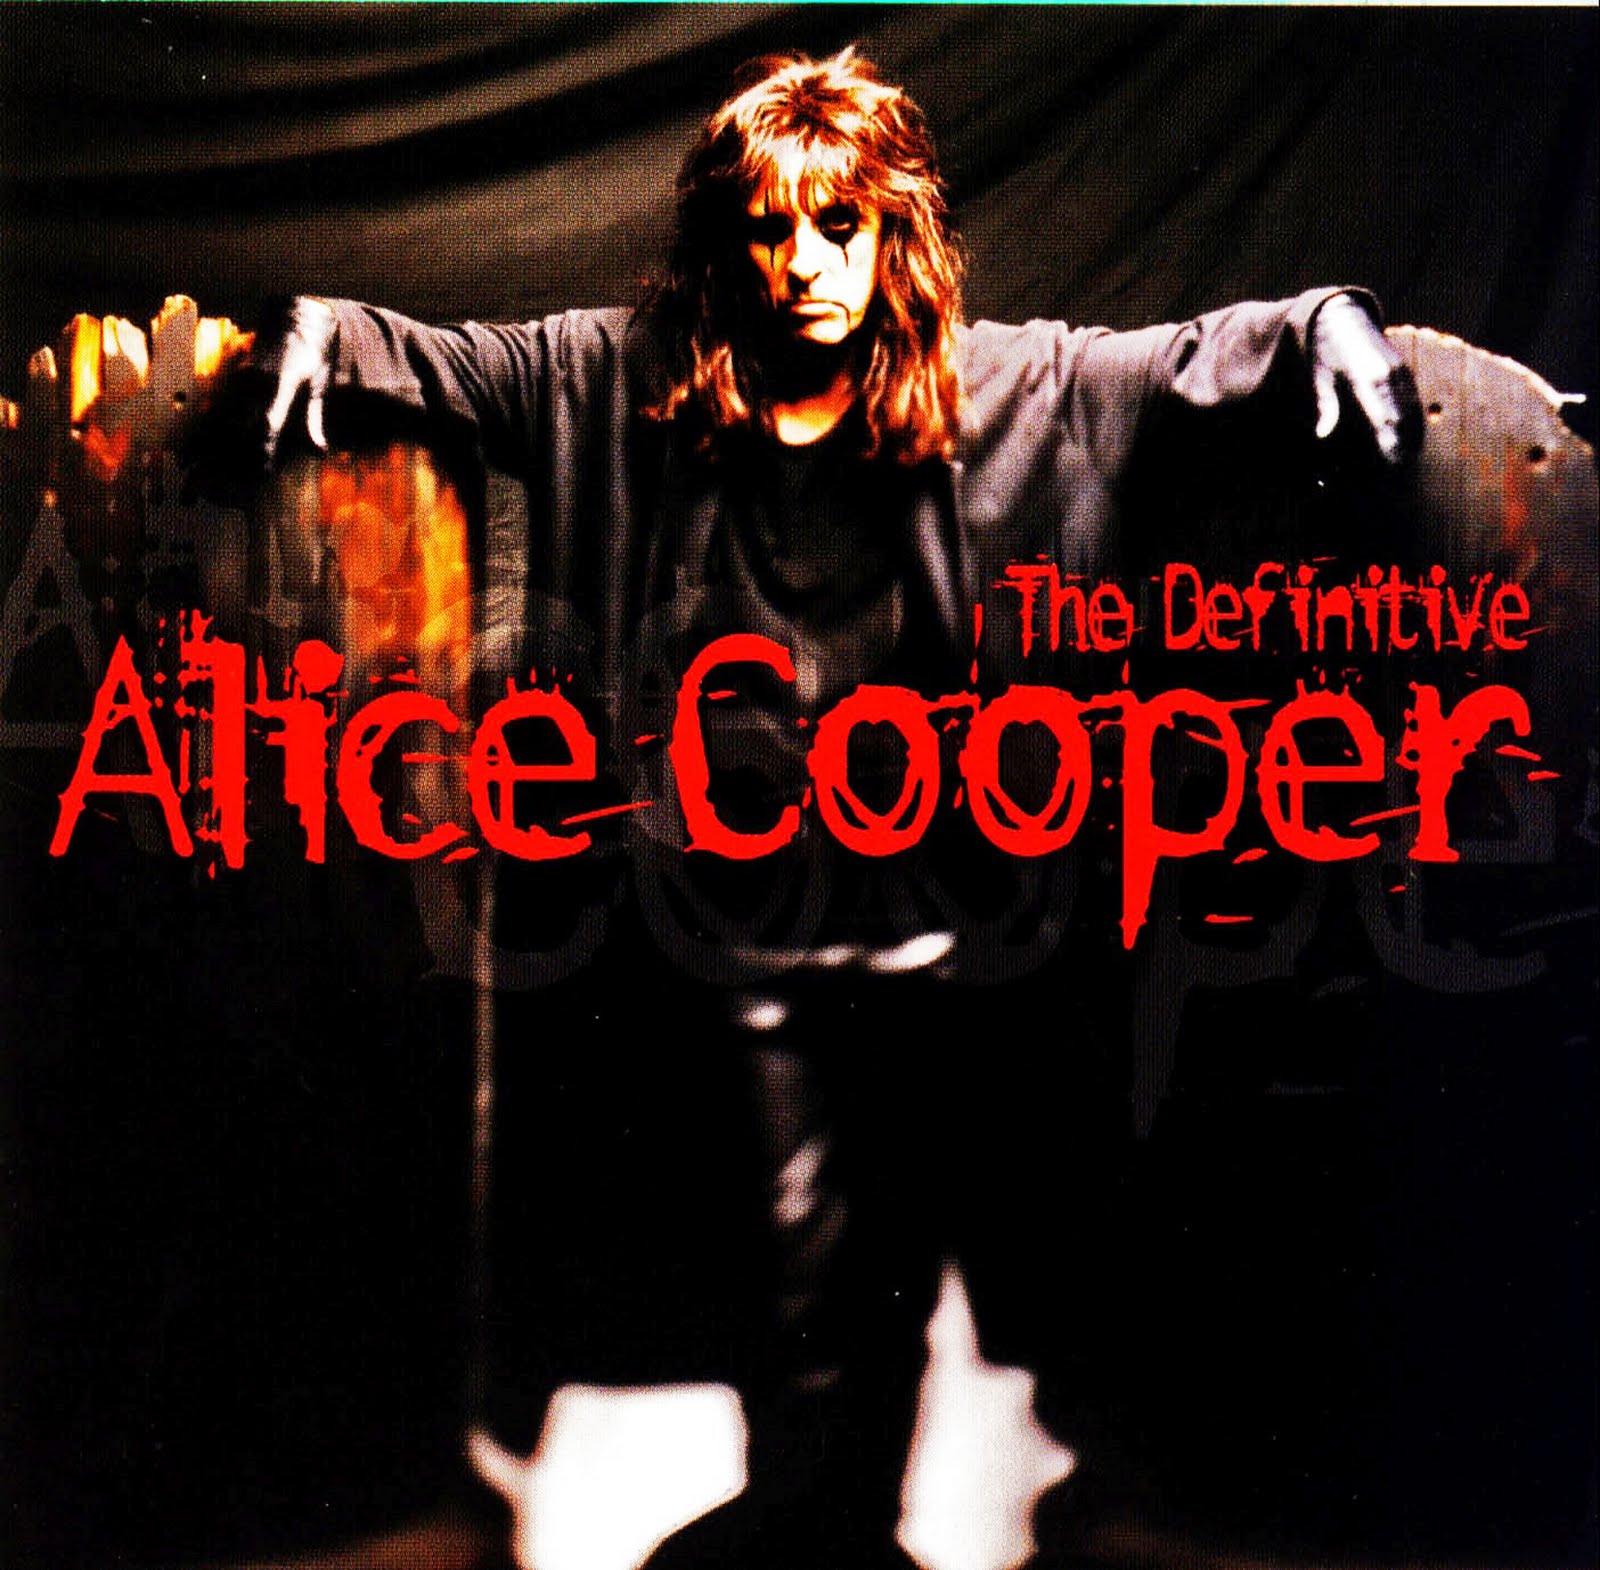 Discografia Alice Cooper - www.vrogue.co